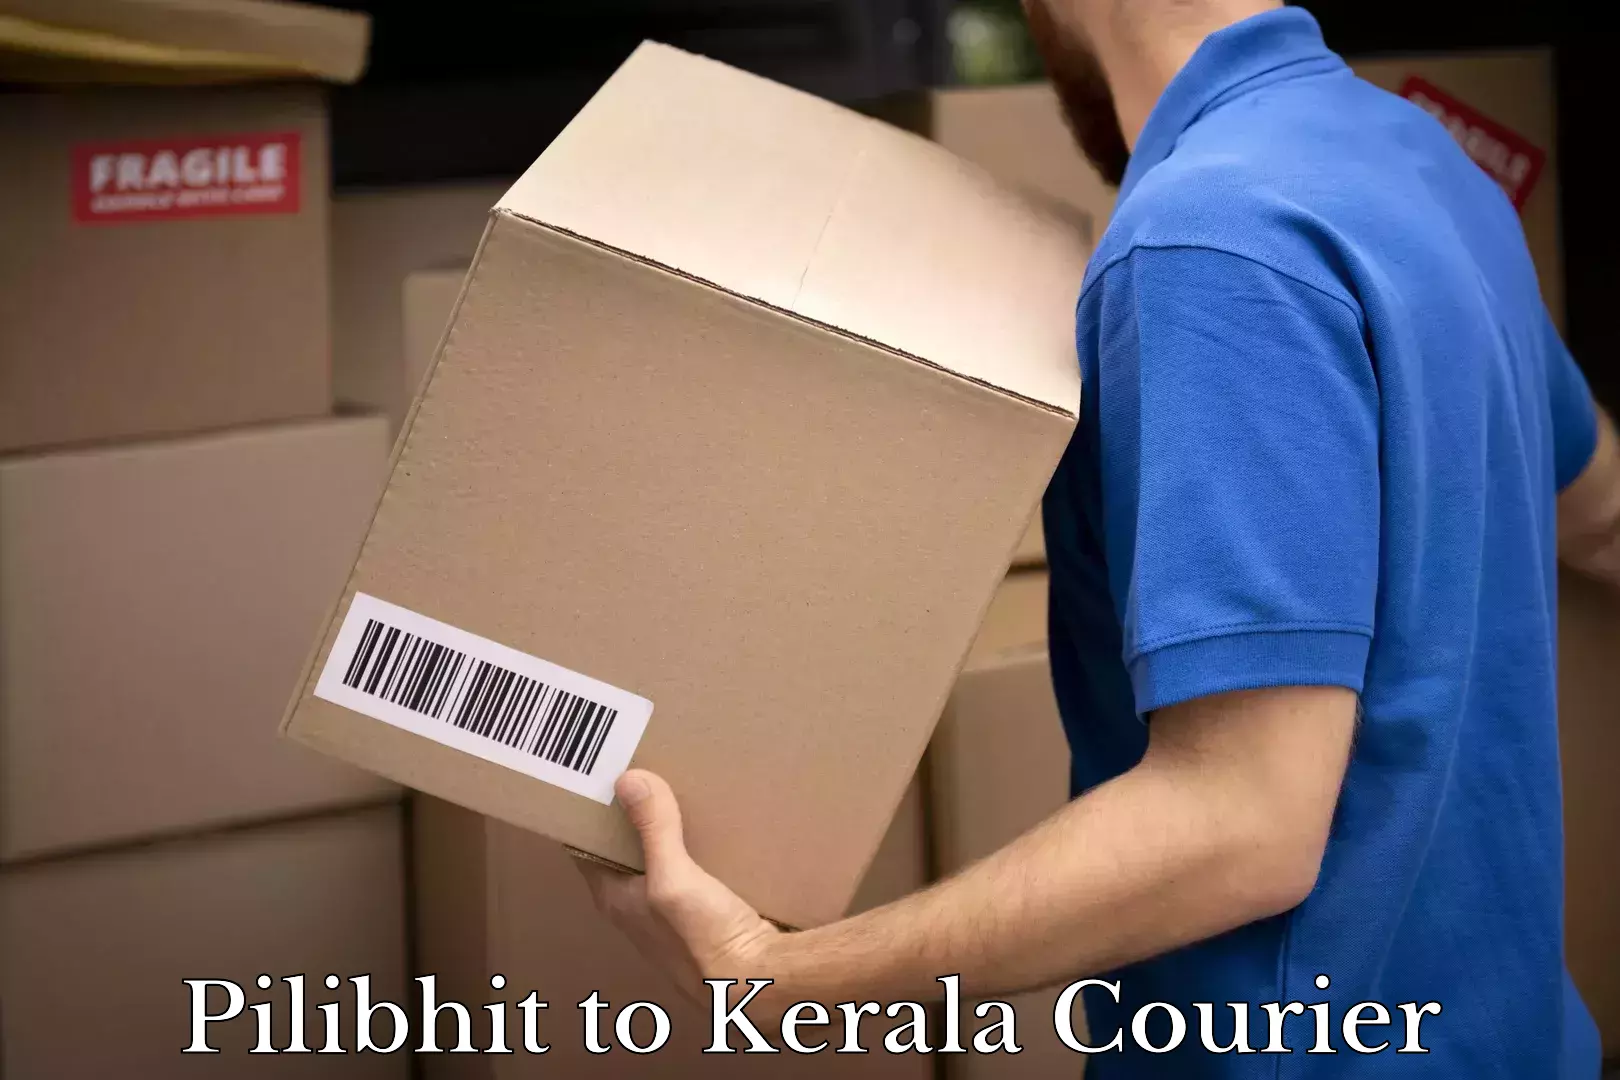 Efficient parcel service Pilibhit to Kerala